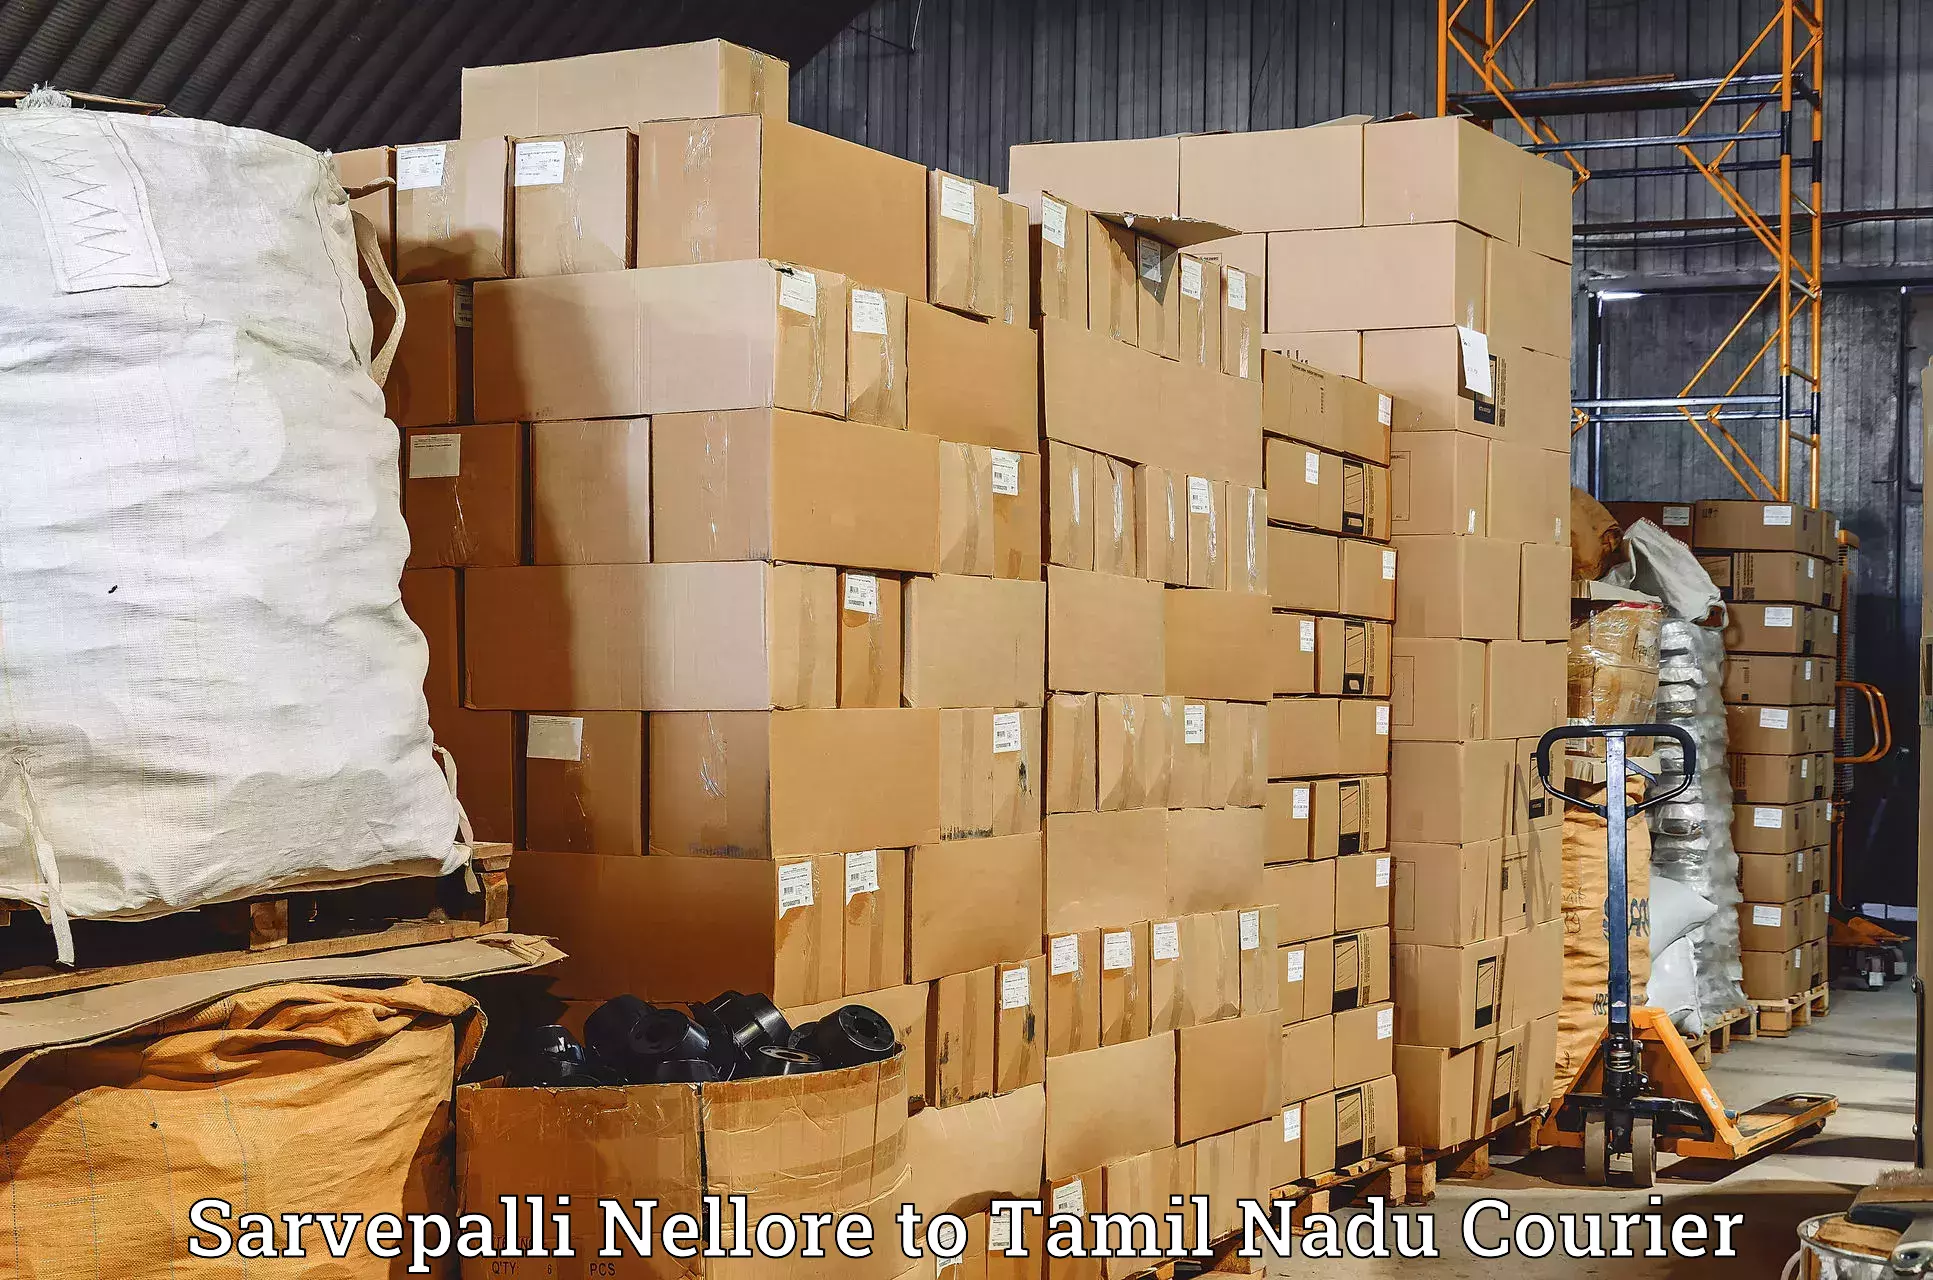 Holiday shipping services Sarvepalli Nellore to Tuticorin Port